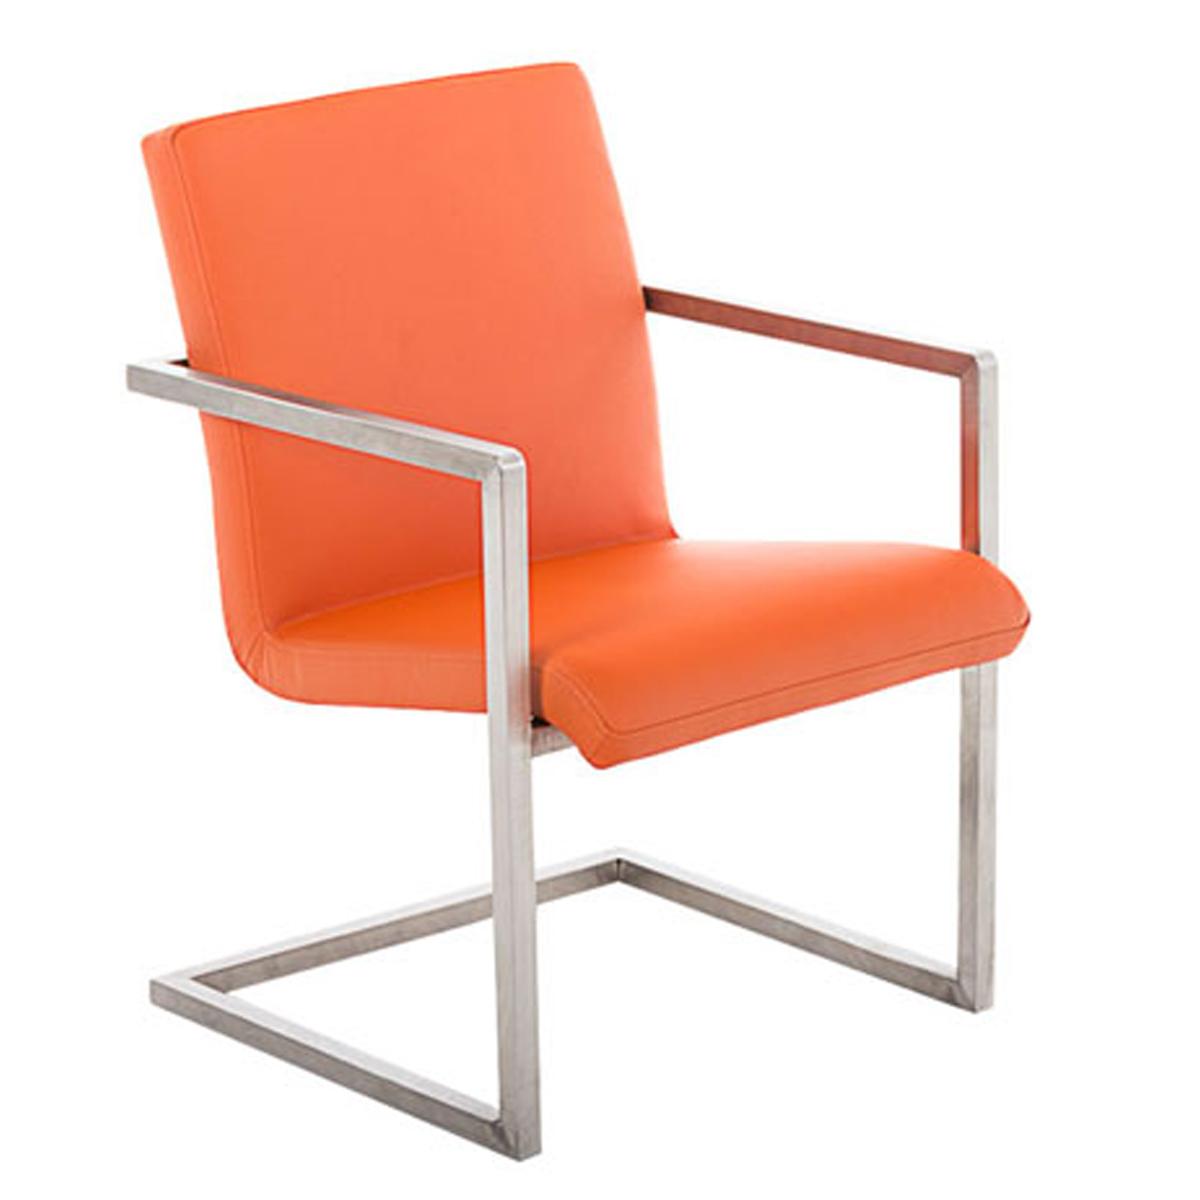 Chaise visiteur OWEN, Structure en Acier Inoxyidable, Design Exclusif, Revêtement en Cuir, Orange